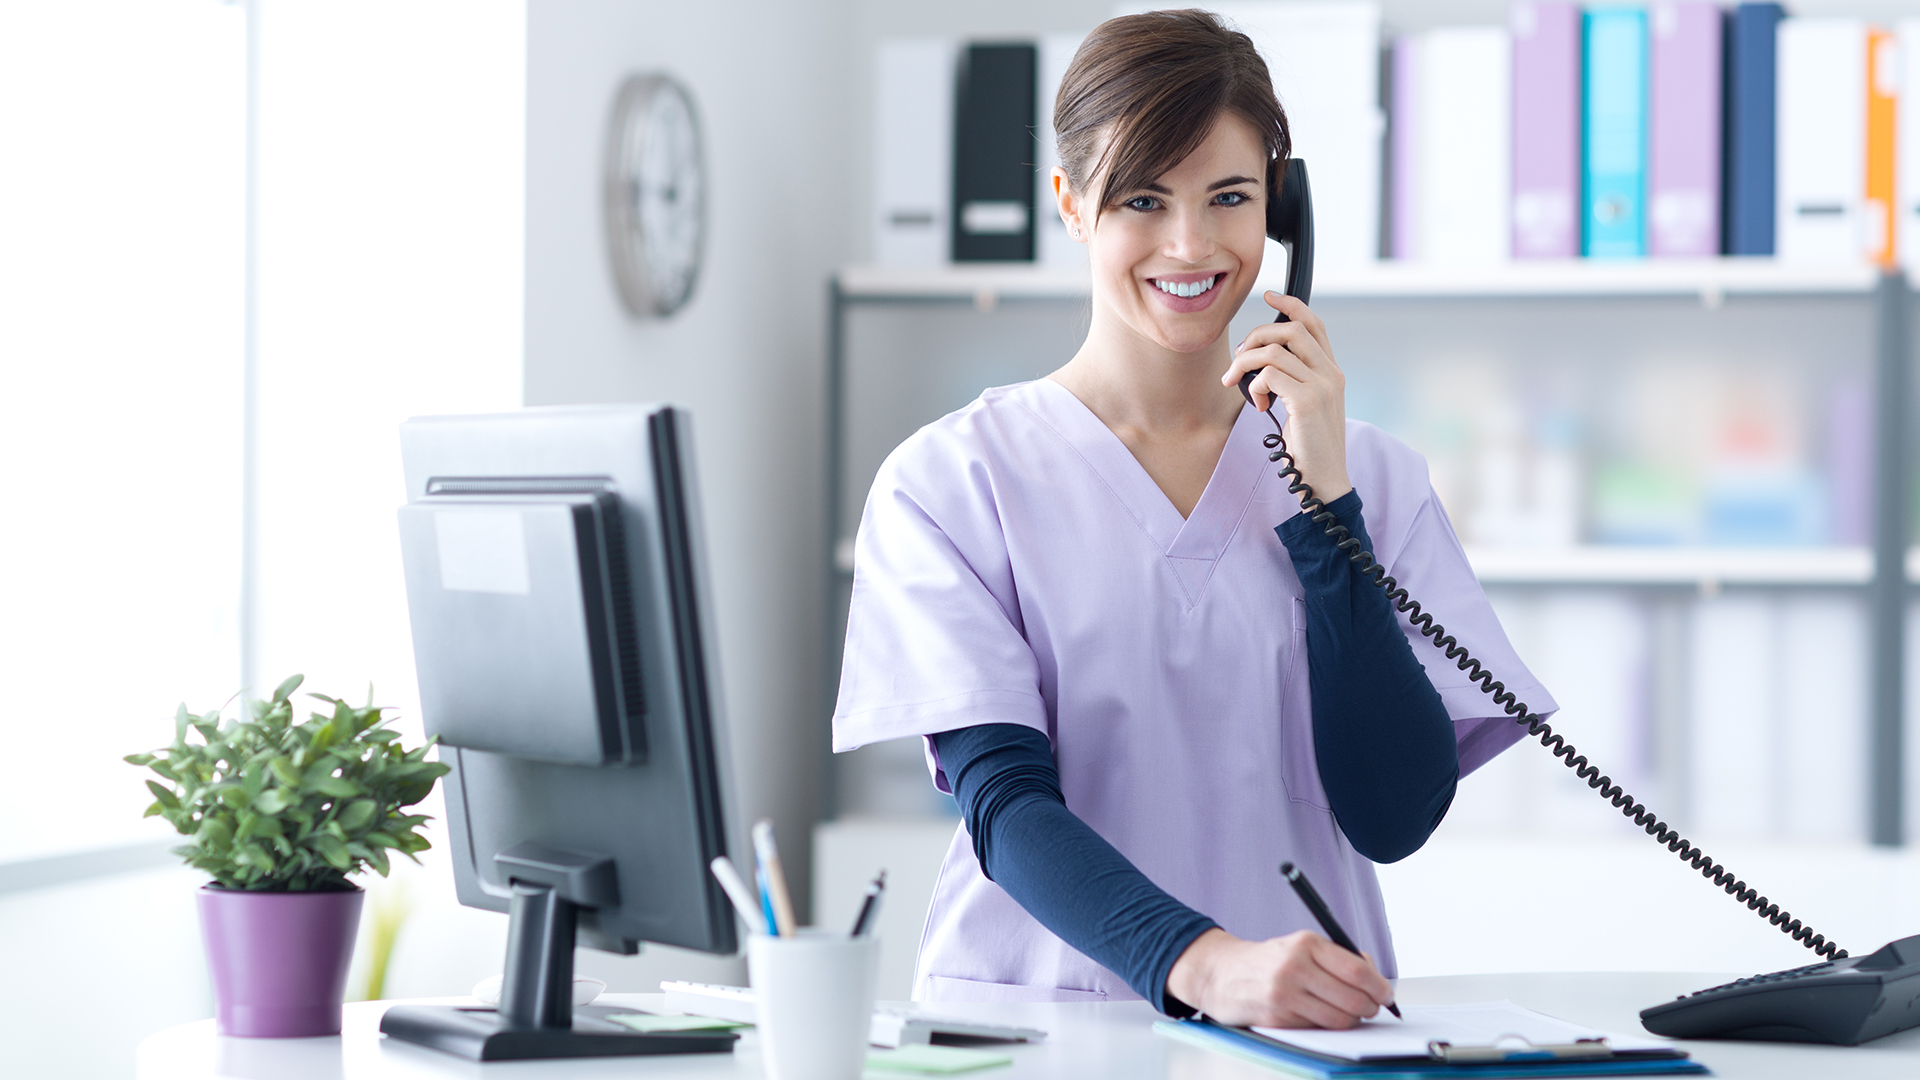 Job Description - Medical Administrative Assistant